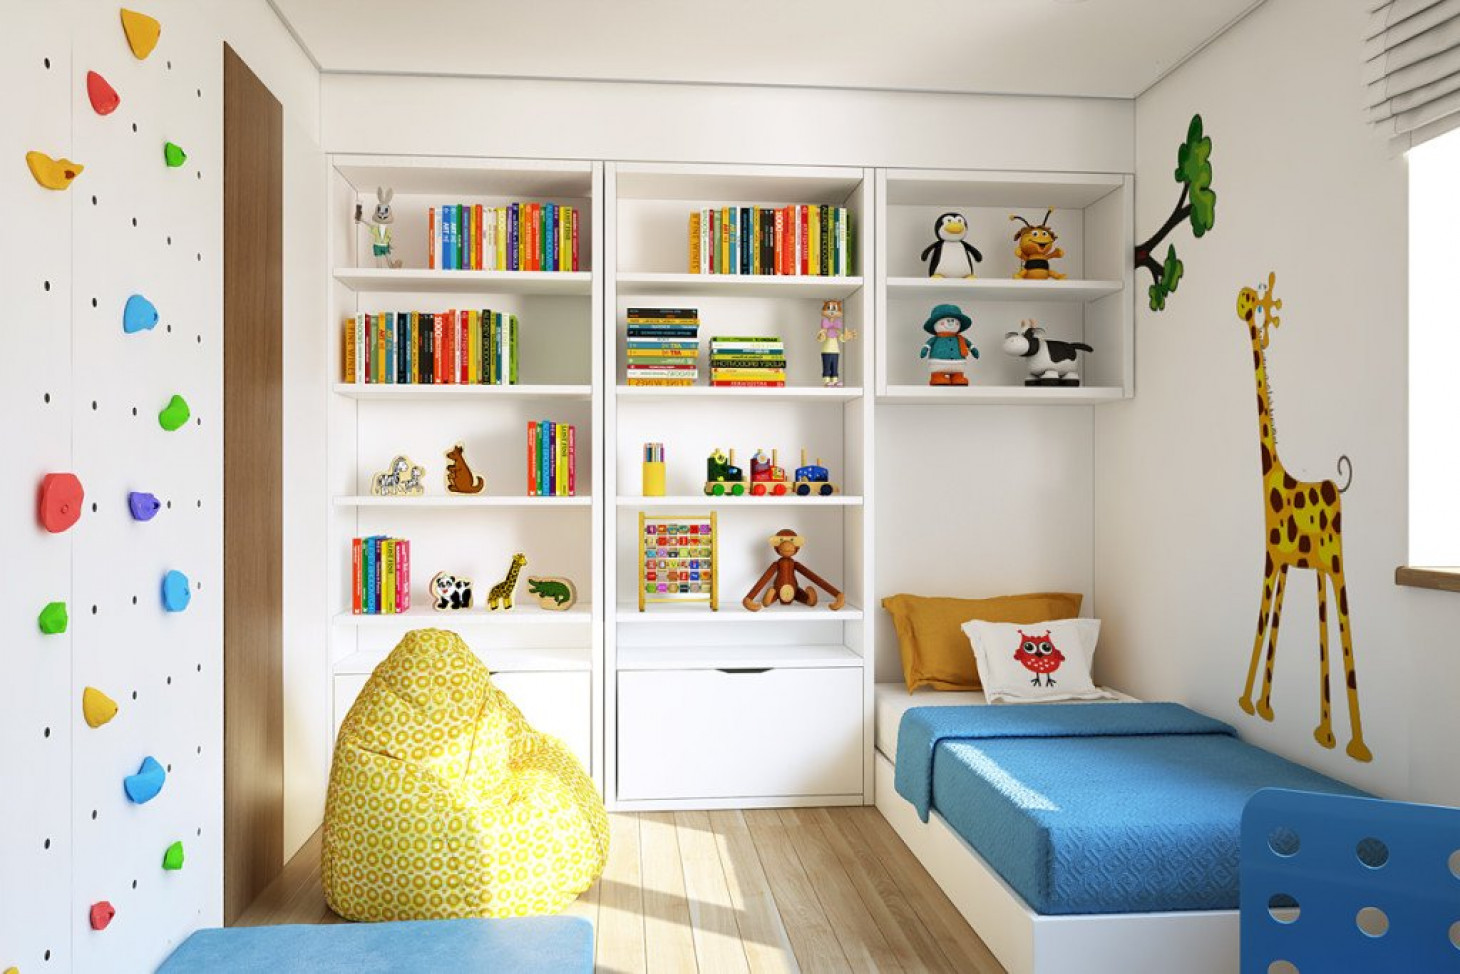 Как создать уютное и функциональное пространство в детской комнате с помощью практичной мебели